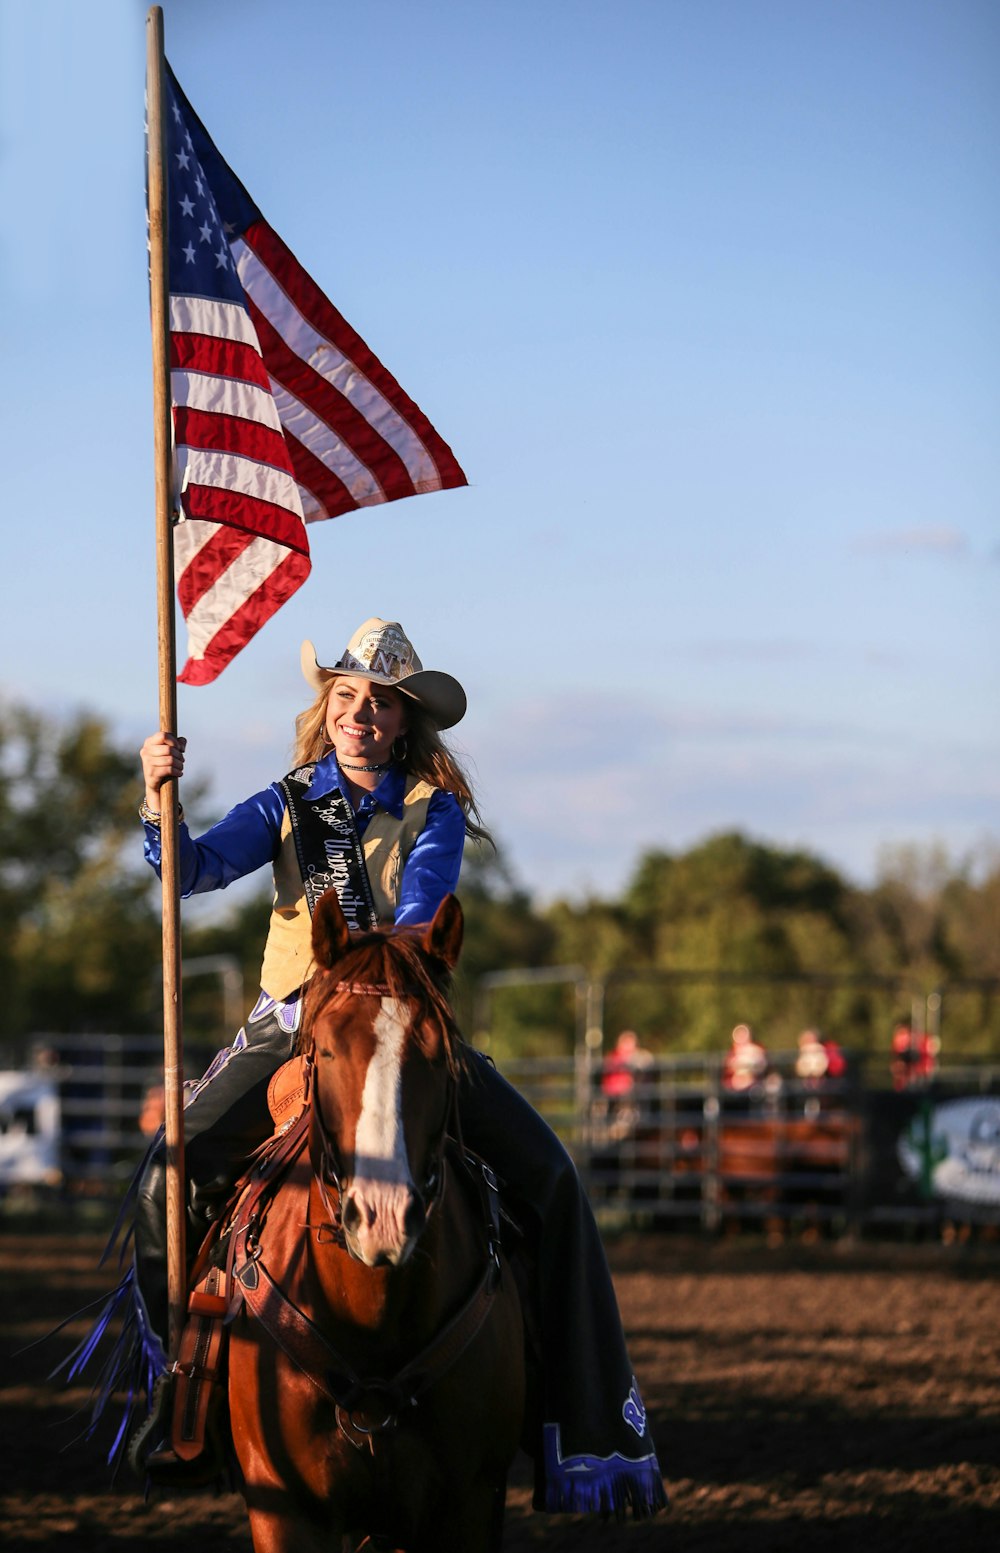 Una mujer montada en el lomo de un caballo marrón sosteniendo una bandera